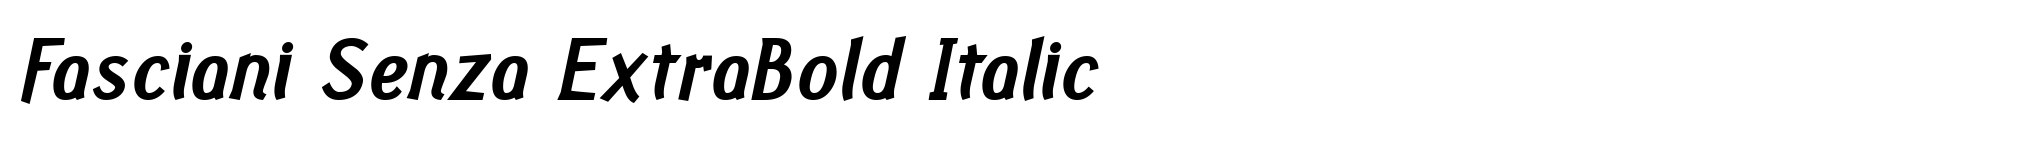 Fasciani Senza ExtraBold Italic image